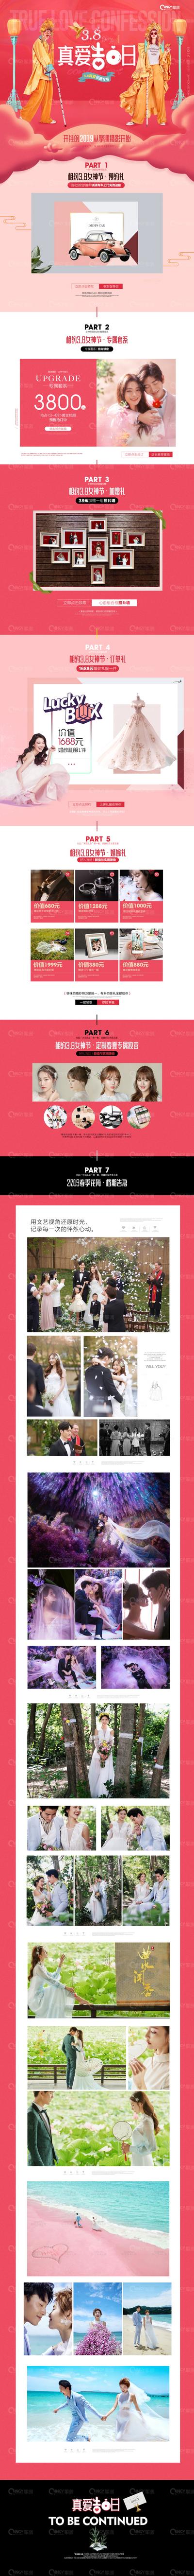 南门网 电商首页 淘宝首页 婚纱摄影 情人节 促销 宣传